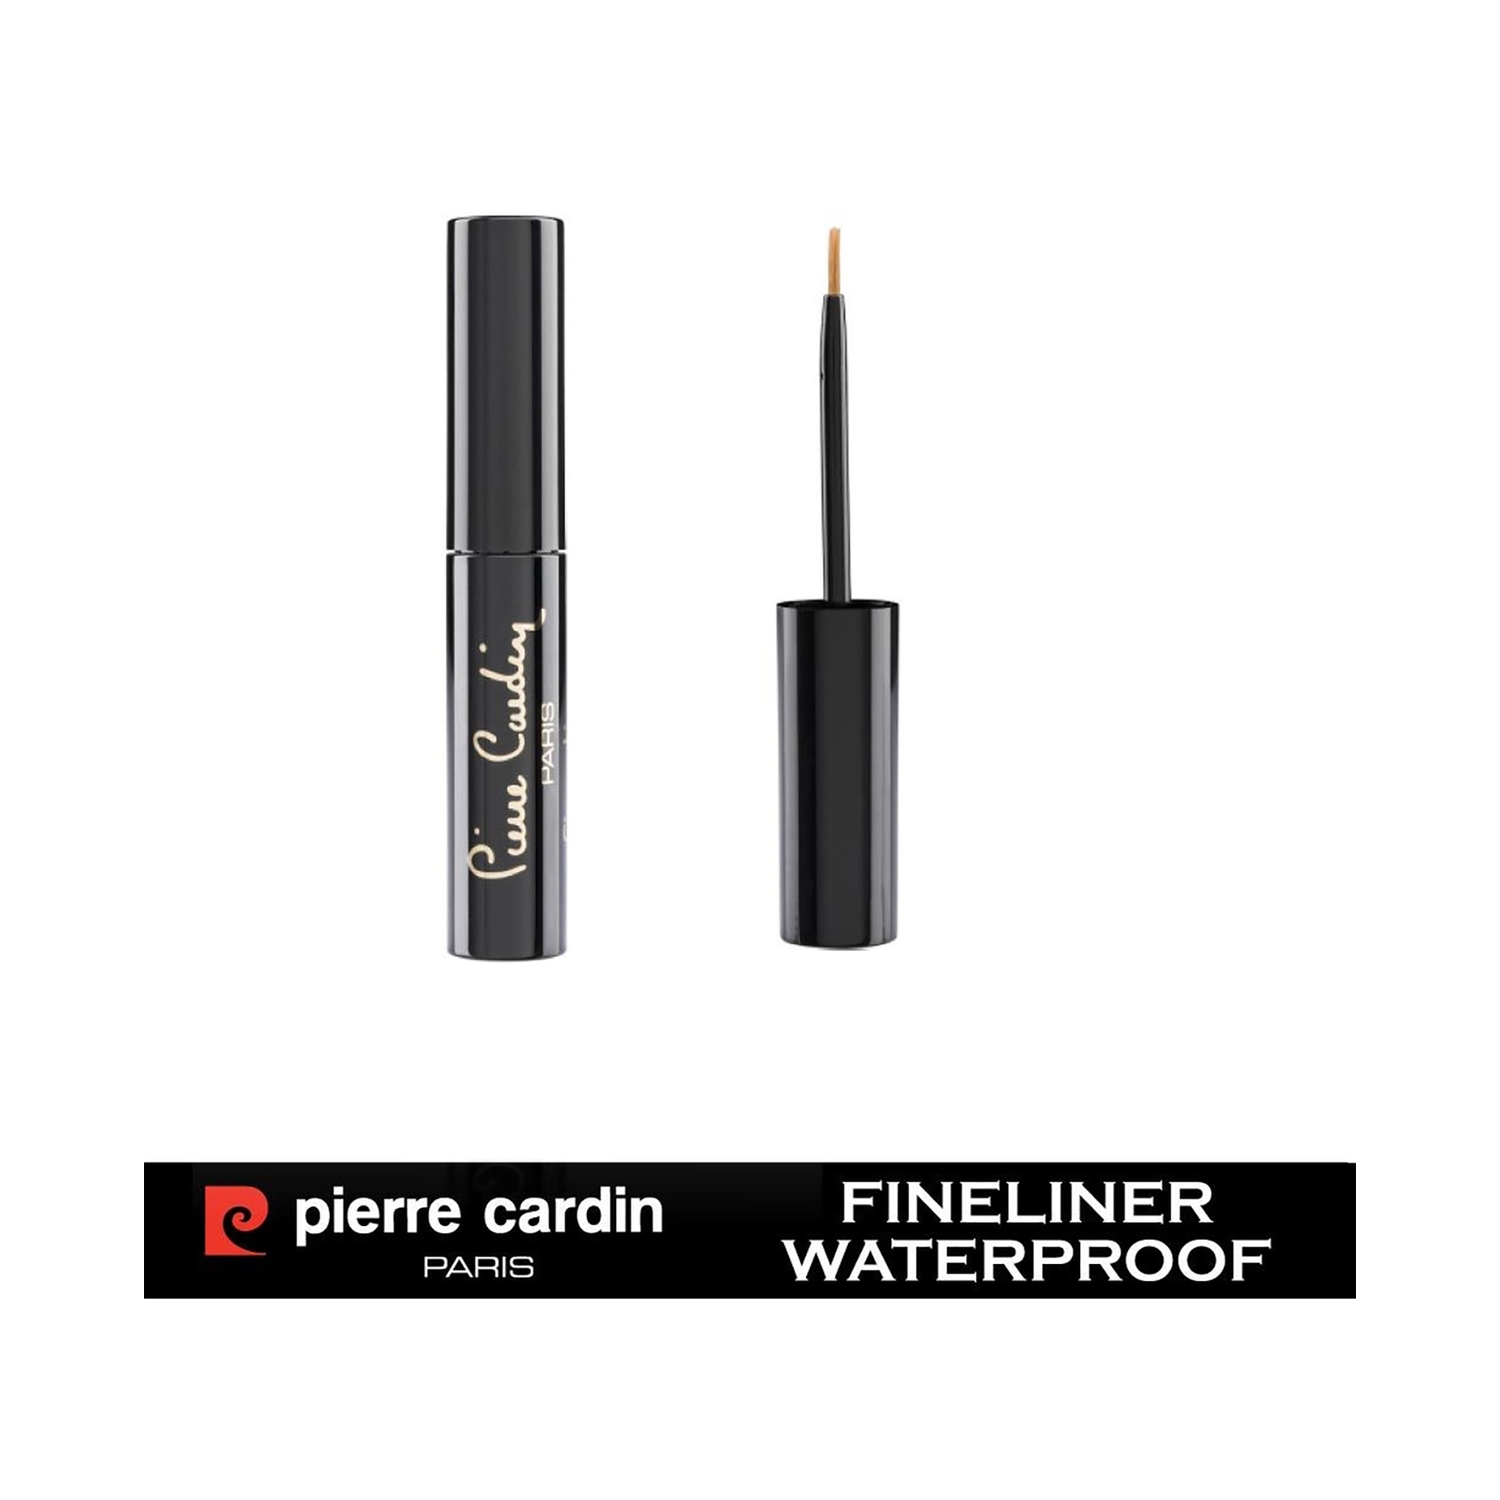 Pierre Cardin Paris | Pierre Cardin Paris Waterproof Fineliner - 506 Black (4ml)